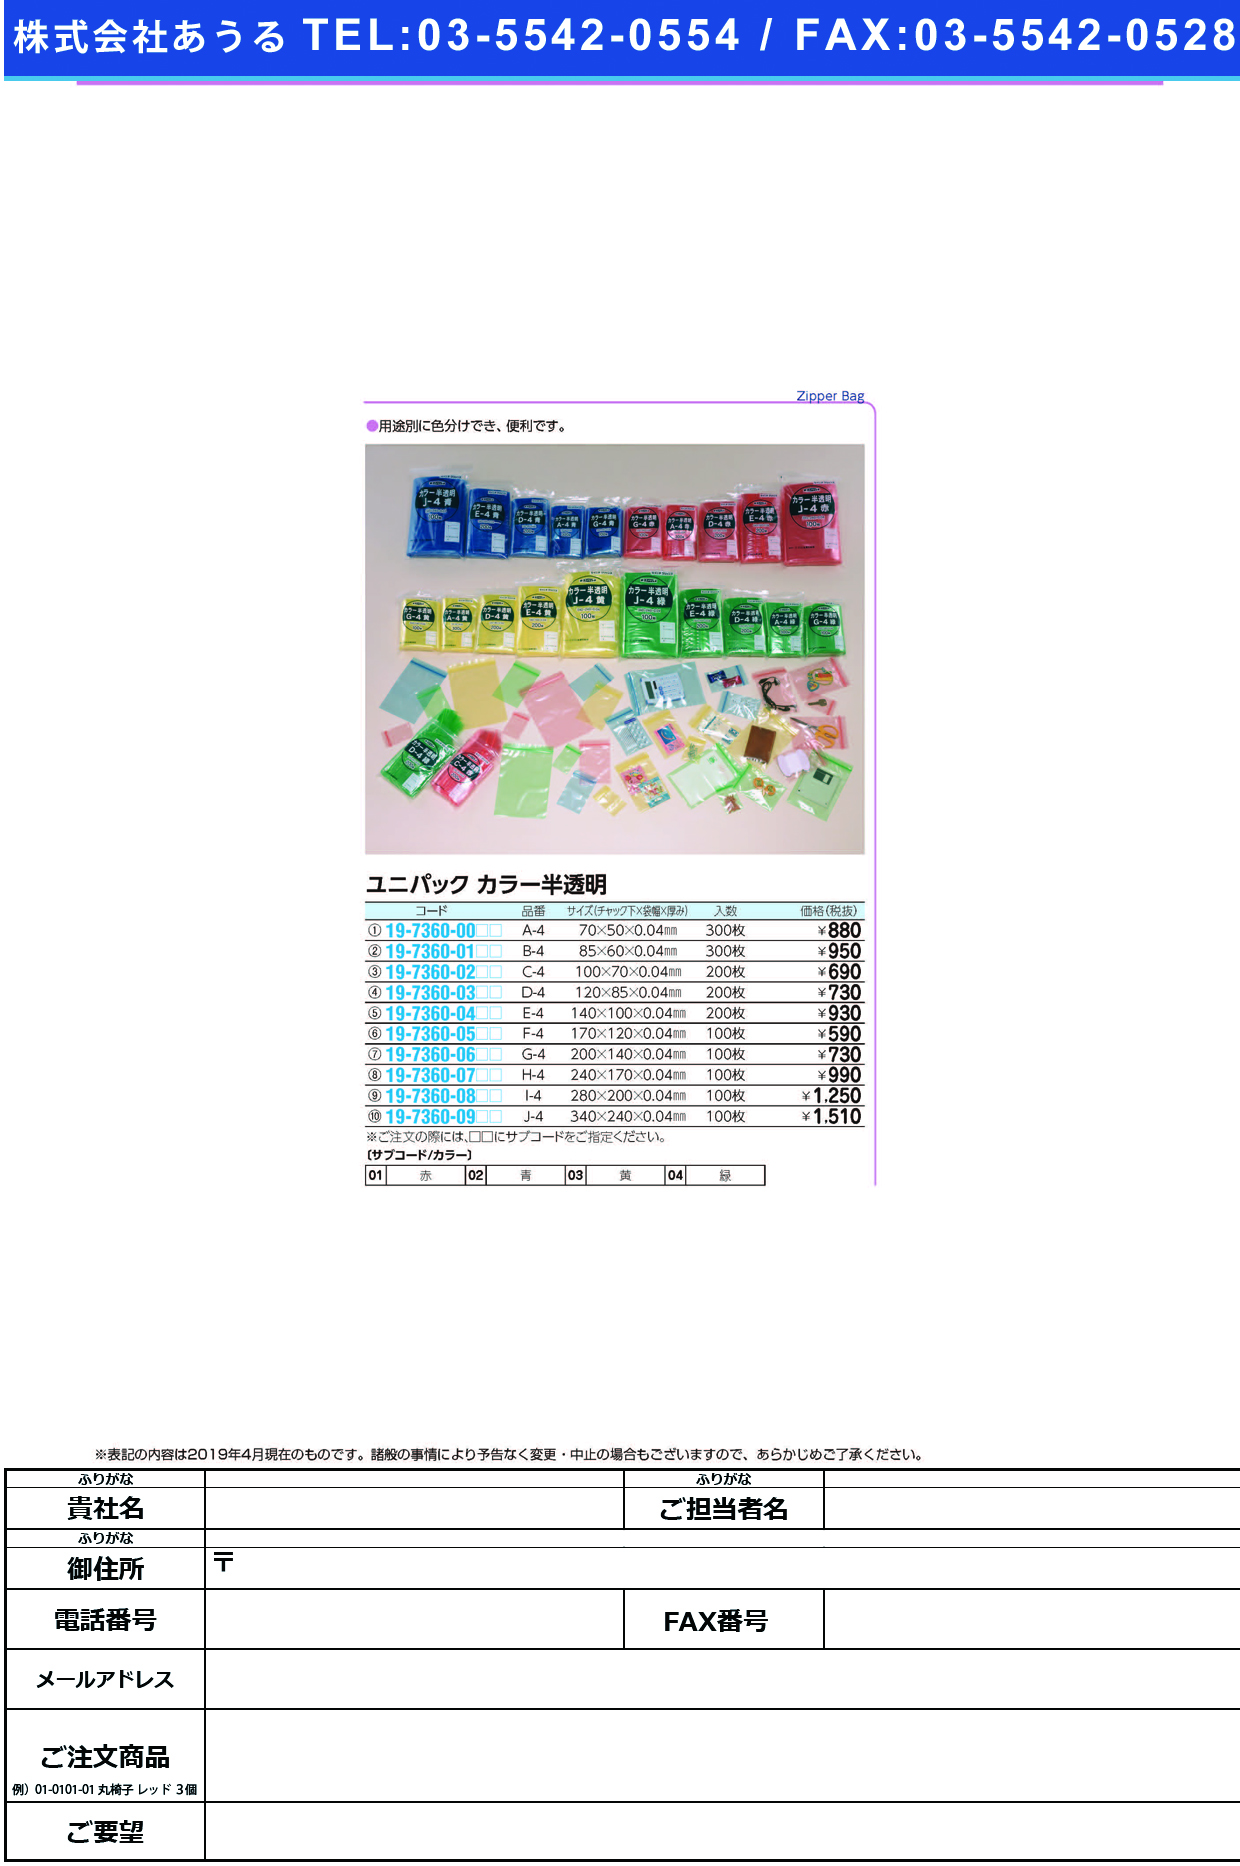 (19-7360-00)ユニパックカラー半透明 A-4(300ﾏｲｲﾘ) ﾕﾆﾊﾟｯｸｶﾗｰﾊﾝﾄｳﾒｲ 青【1袋単位】【2019年カタログ商品】